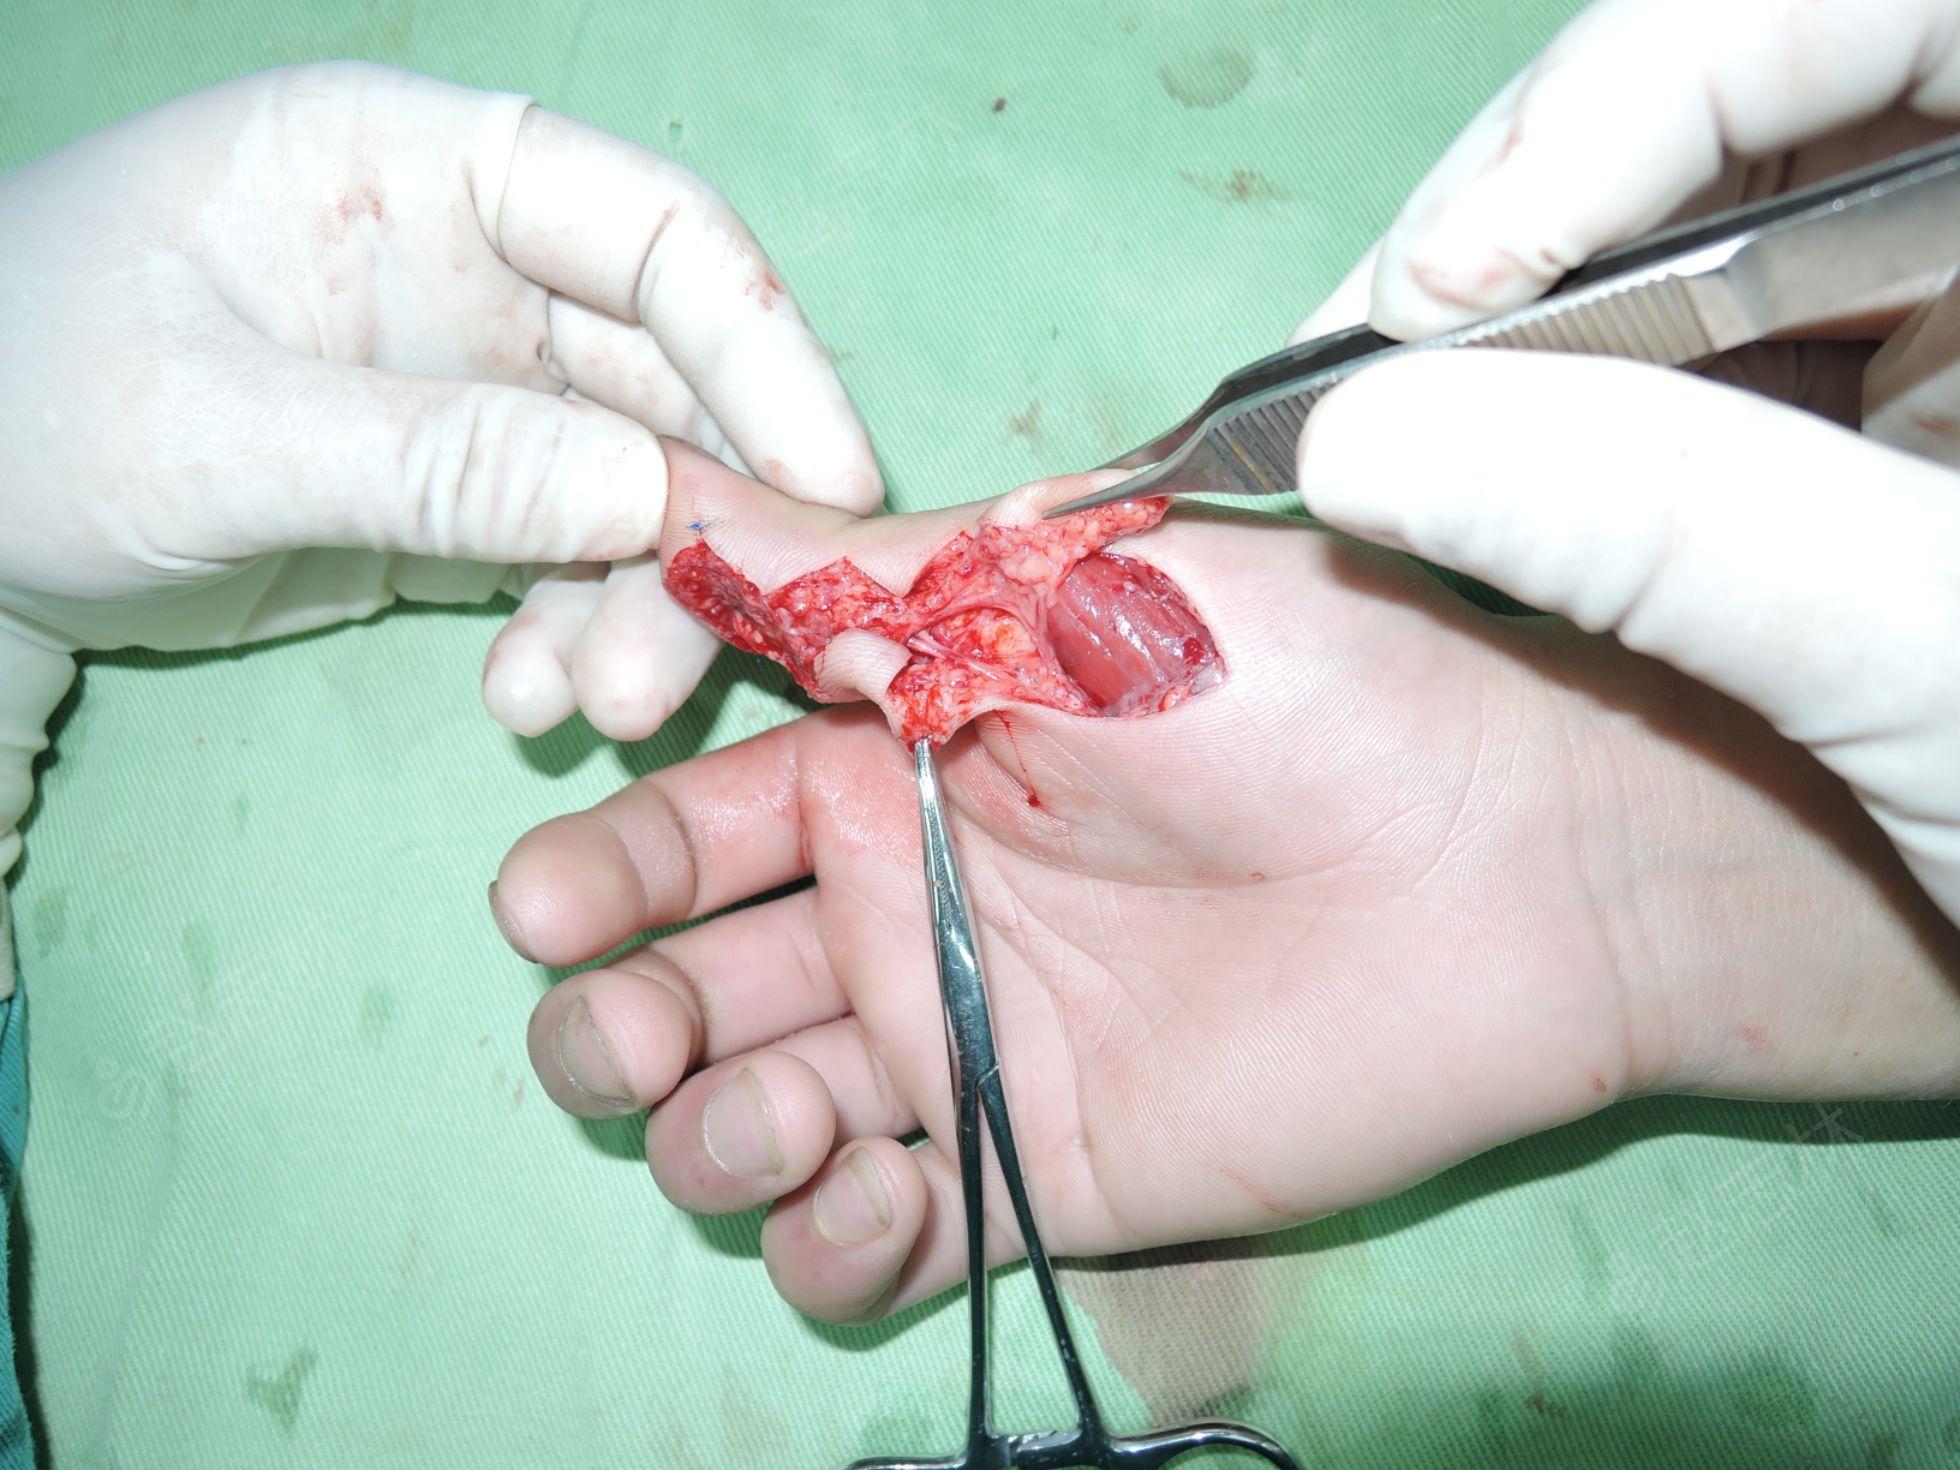 大鱼际带蒂皮瓣手术图图片